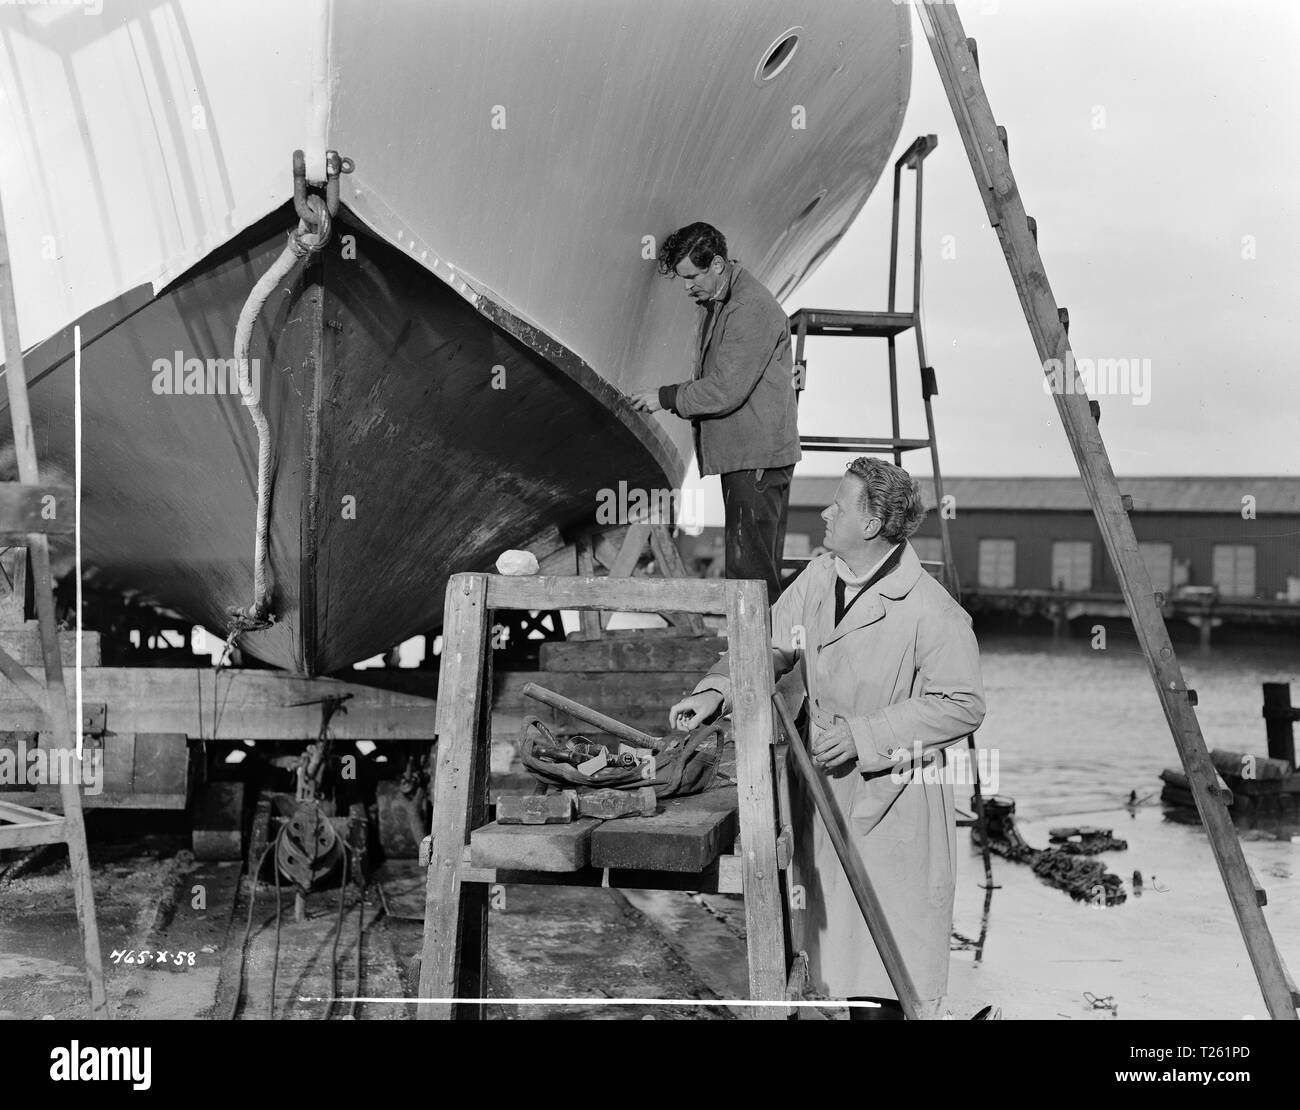 La nave che è morto di vergogna (1955) George Baker, regista Basil Dearden, Data: 1955 Foto Stock